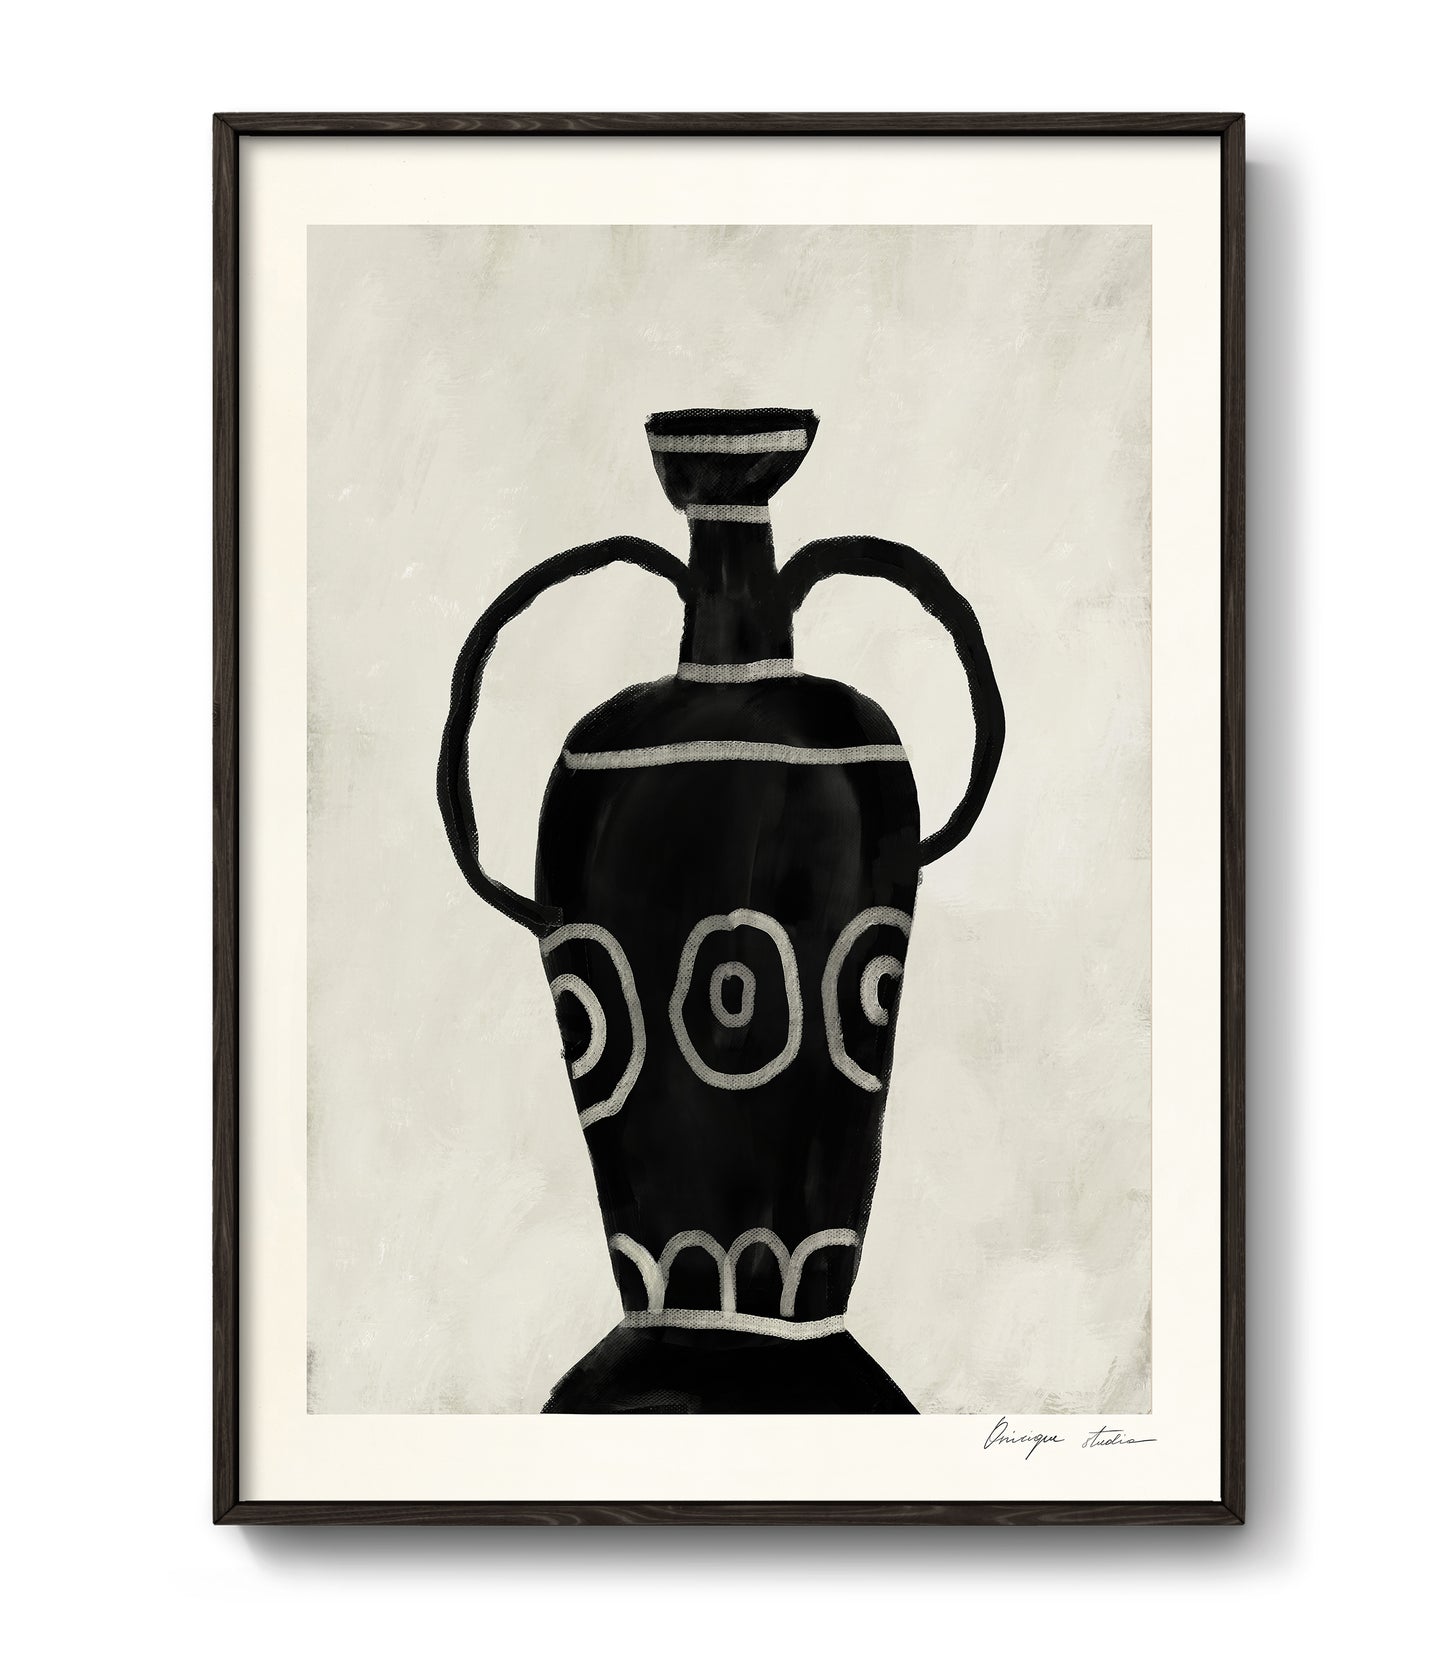 The vase by Onirique studio